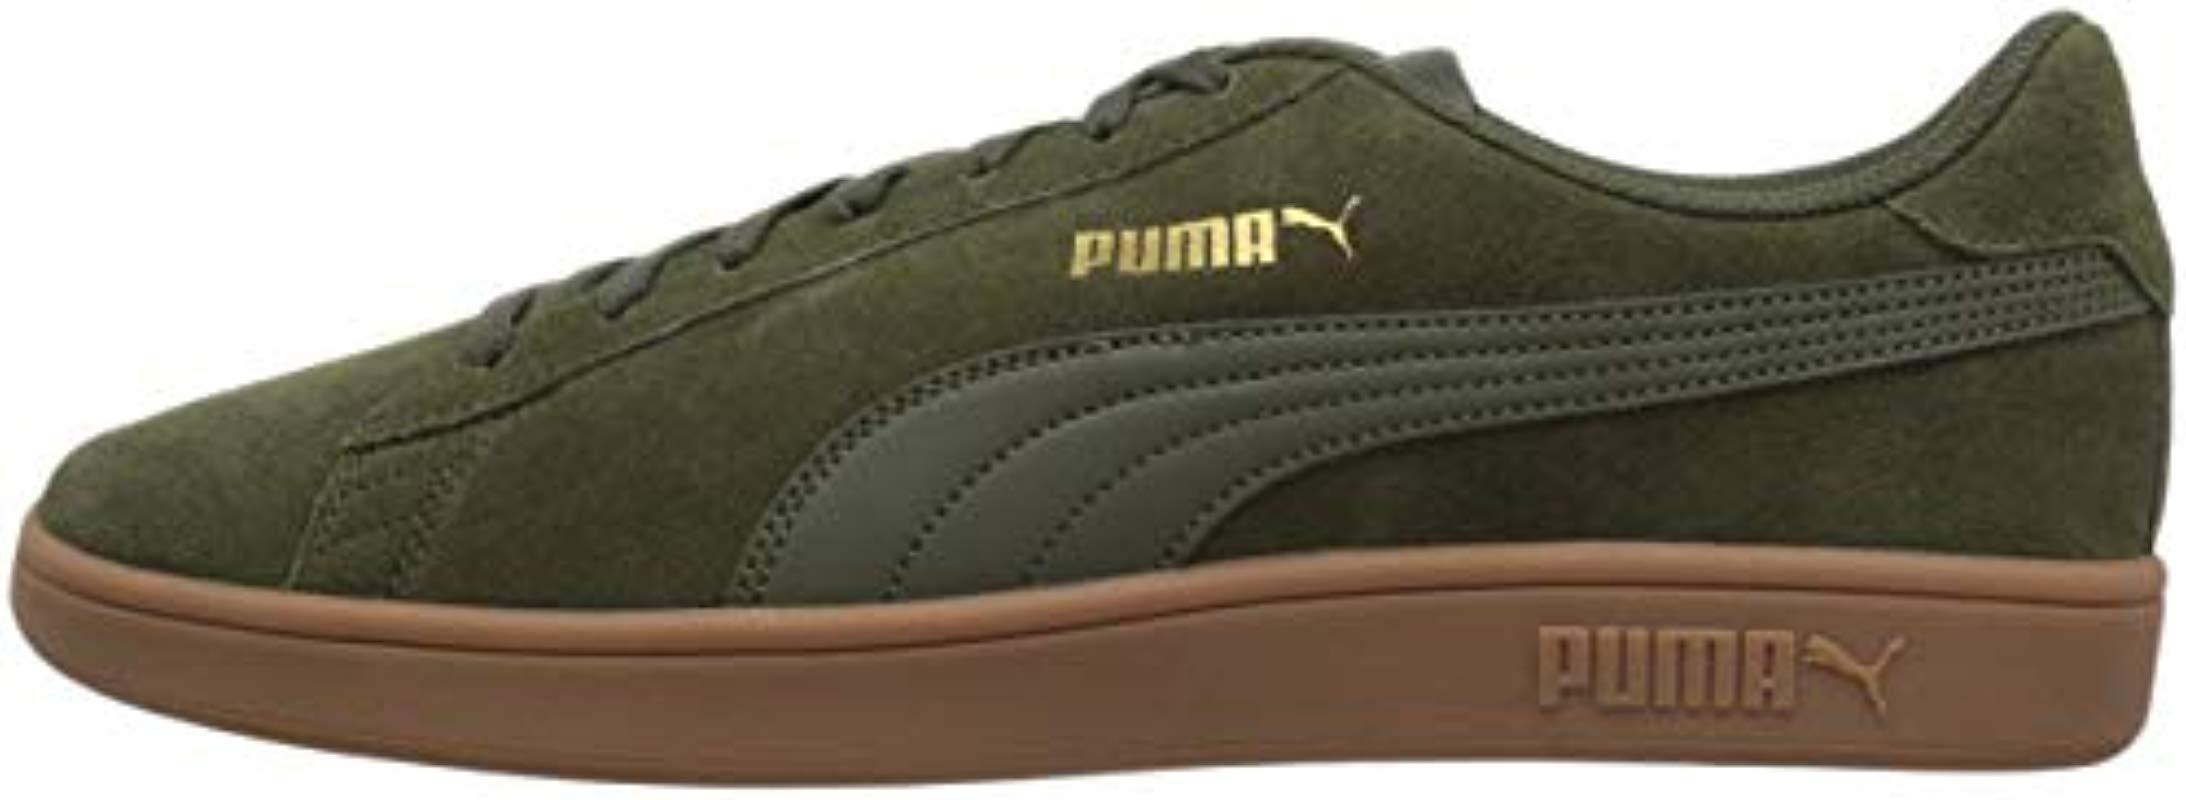 Puma Smash V2 Varsity Green